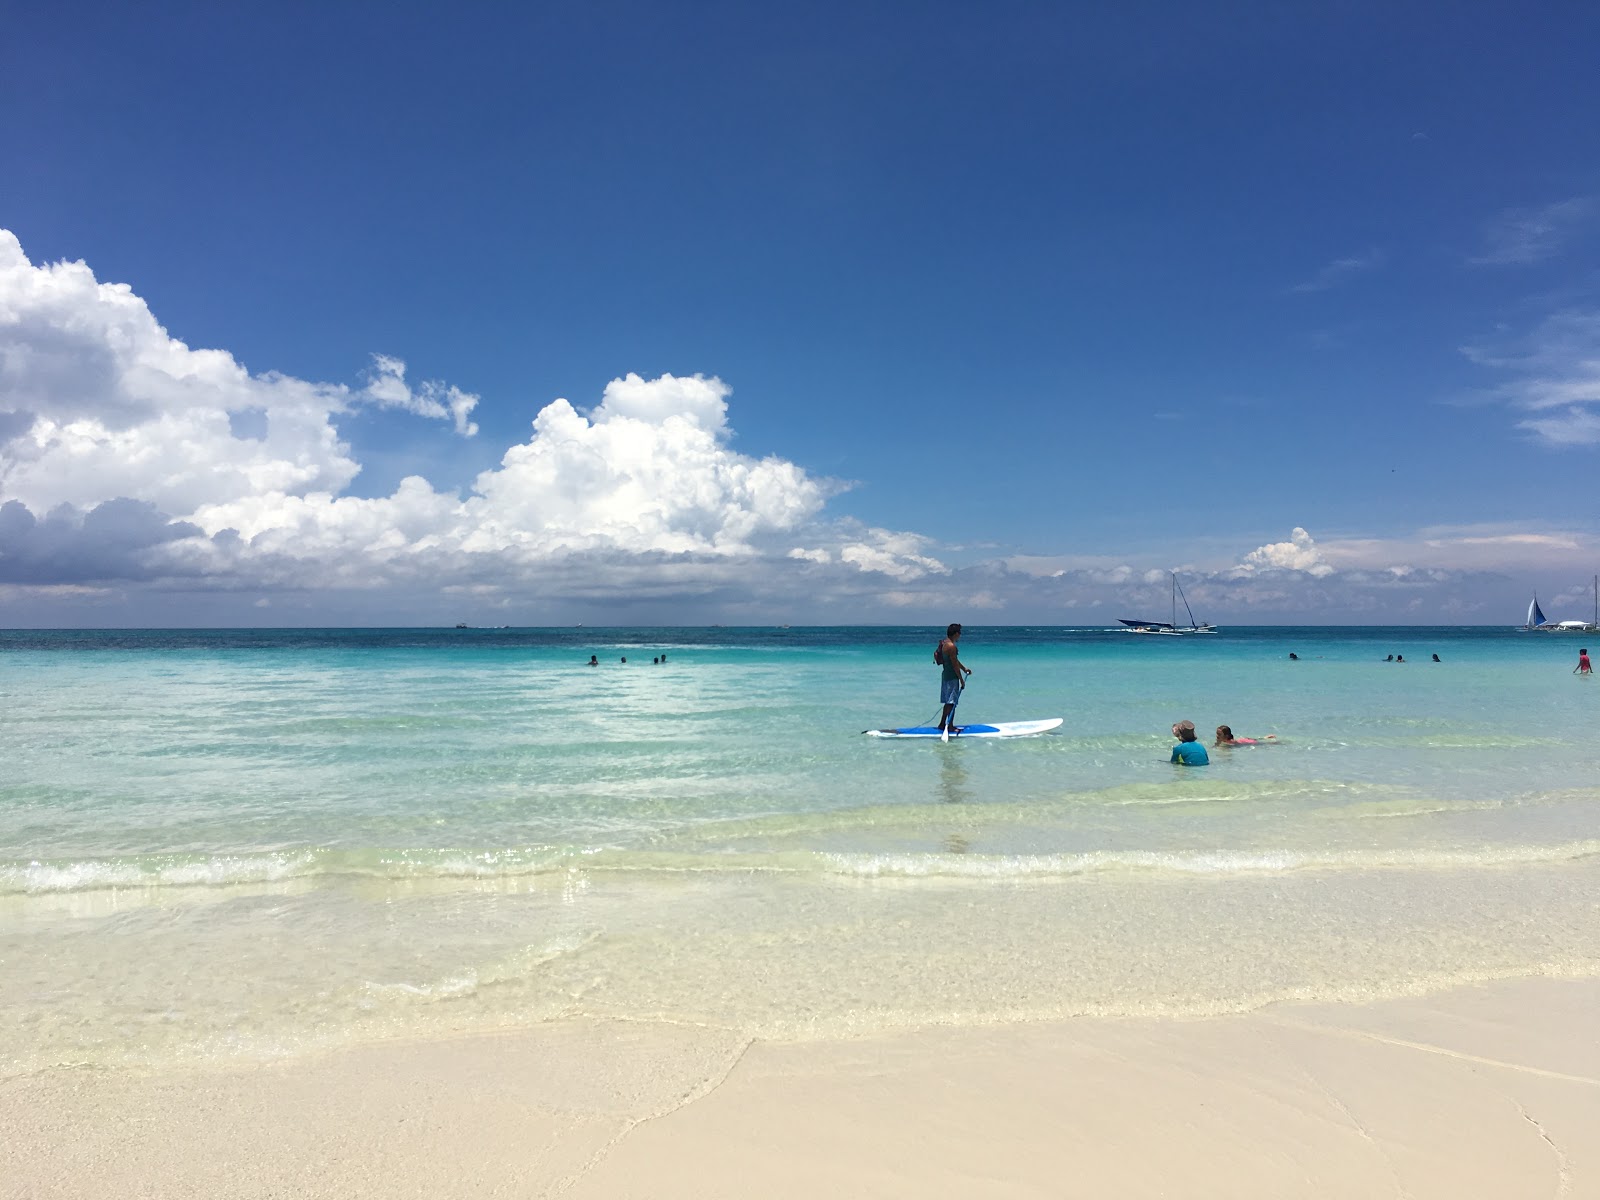 Boracay Plajı'in fotoğrafı geniş plaj ile birlikte